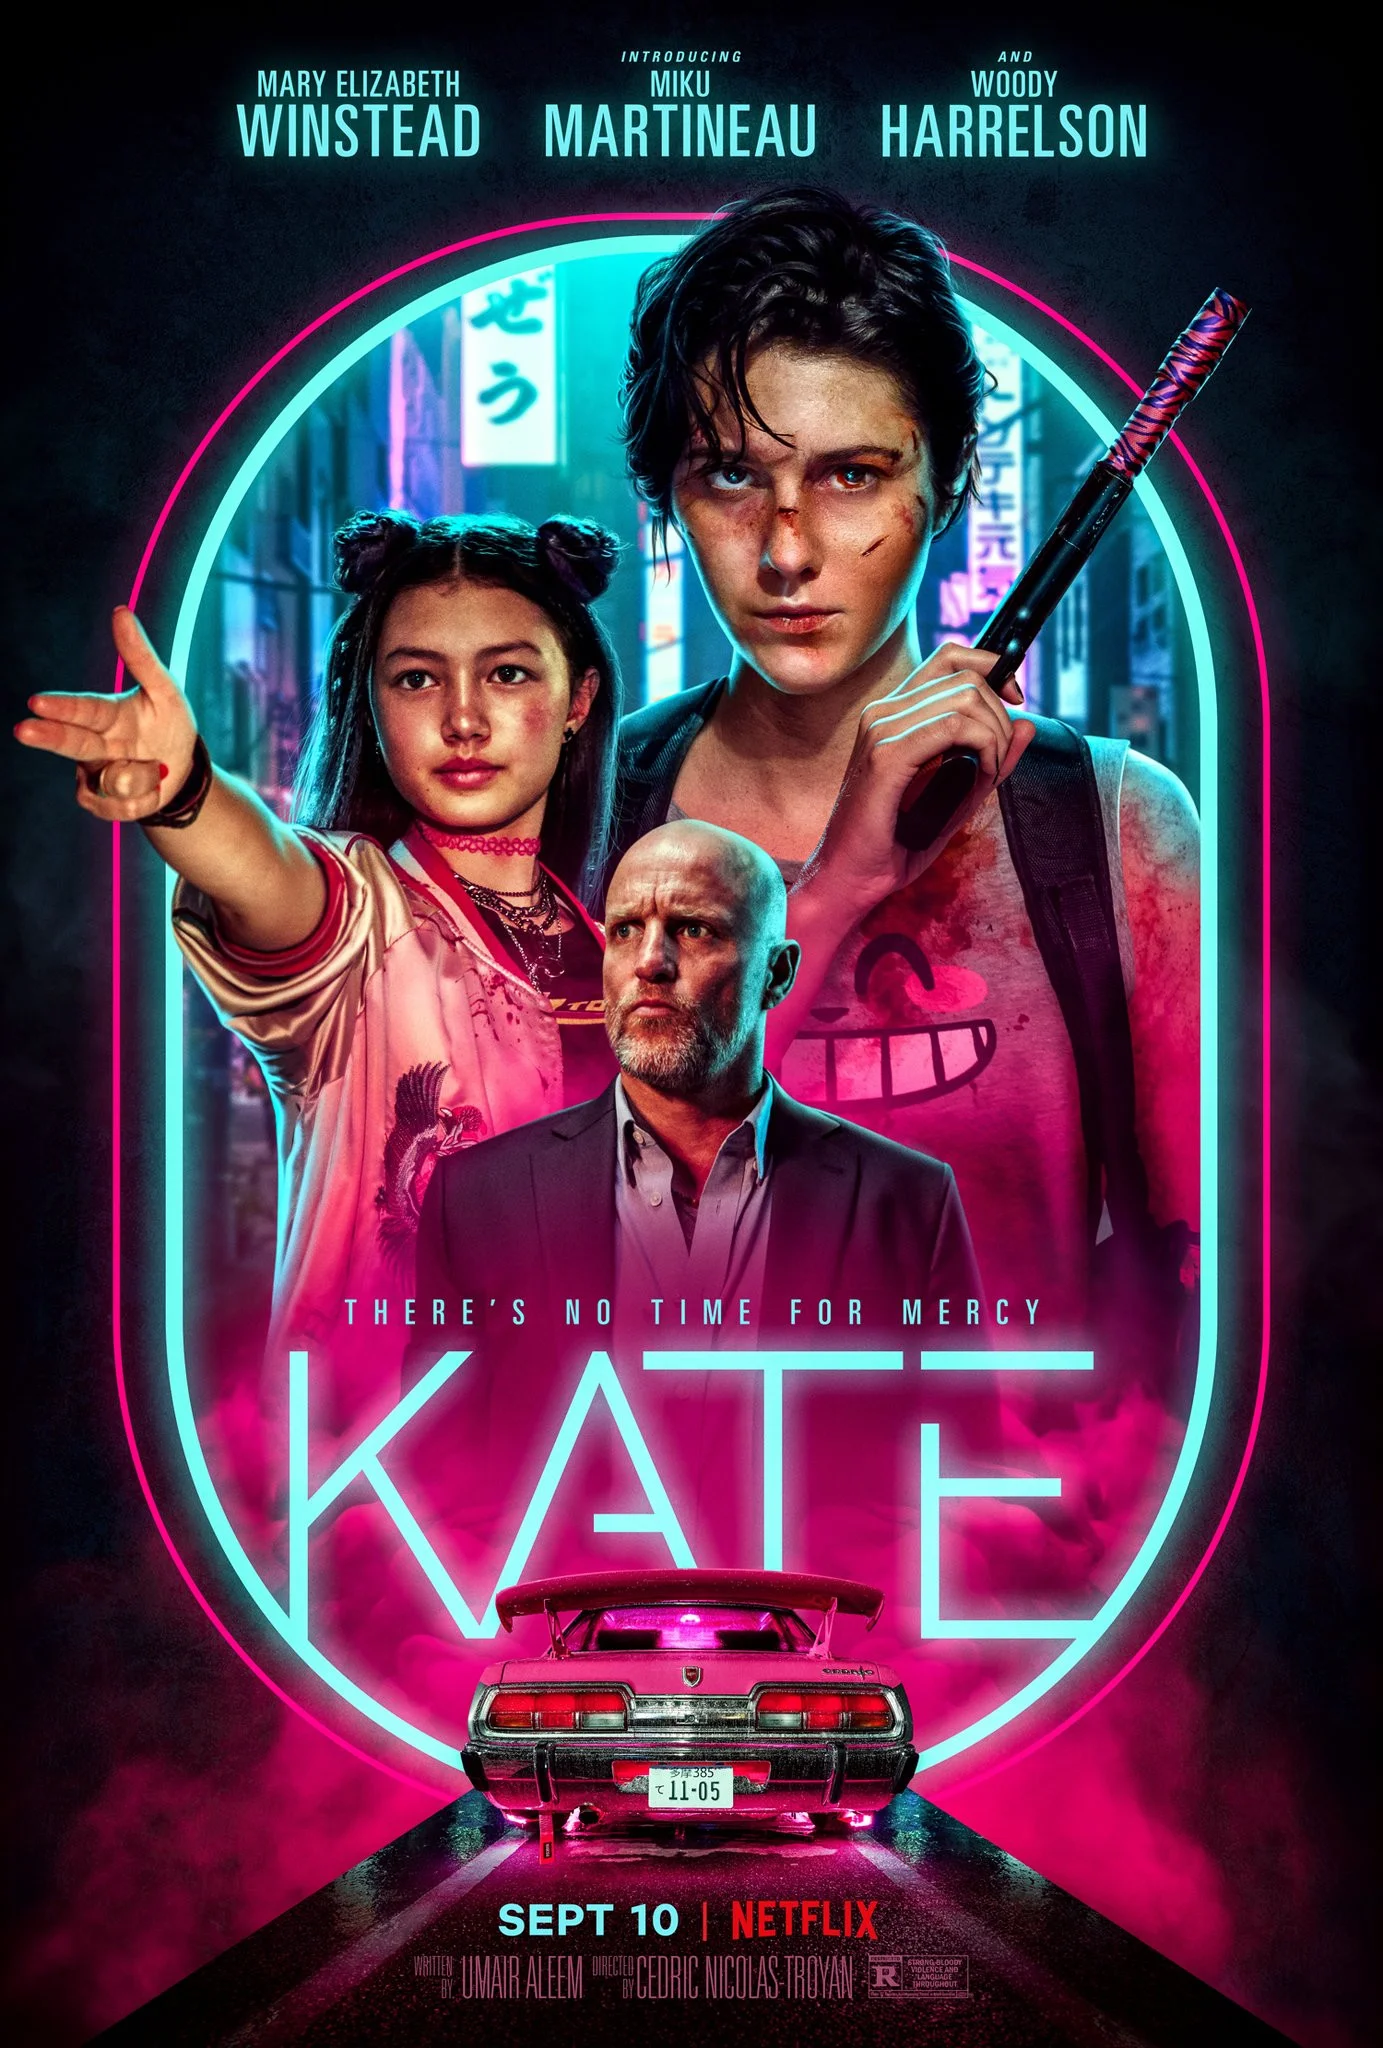 Якудза, убийцы и жестокий экшен — в трейлере боевика «Кейт» Netflix - фото 1